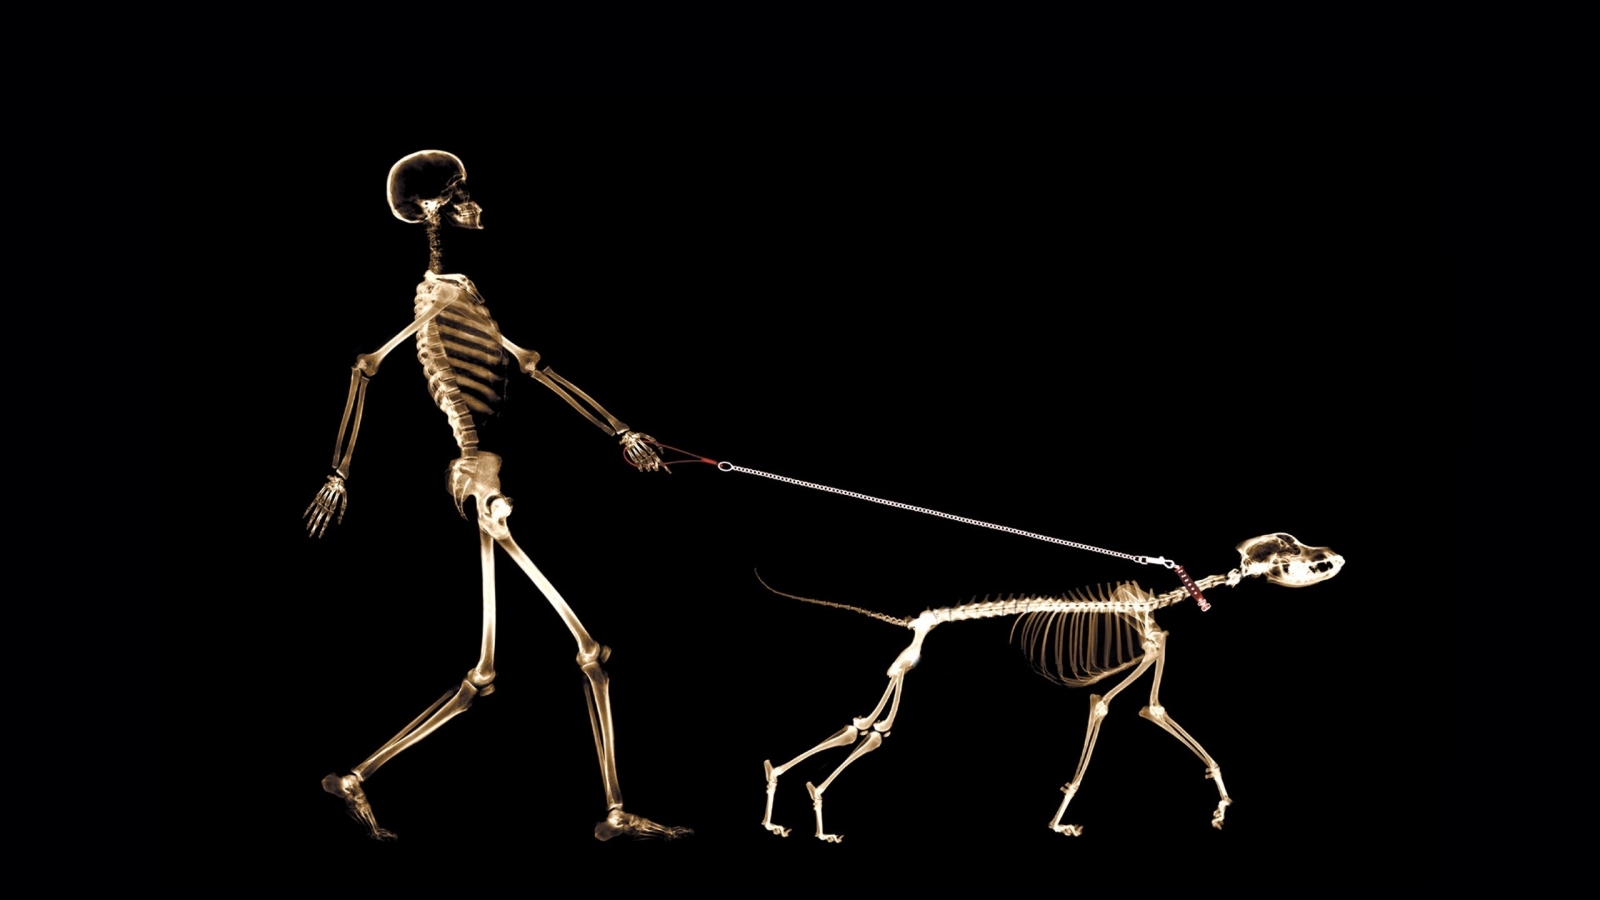 Skeletons Walking for 1600 x 900 HDTV resolution